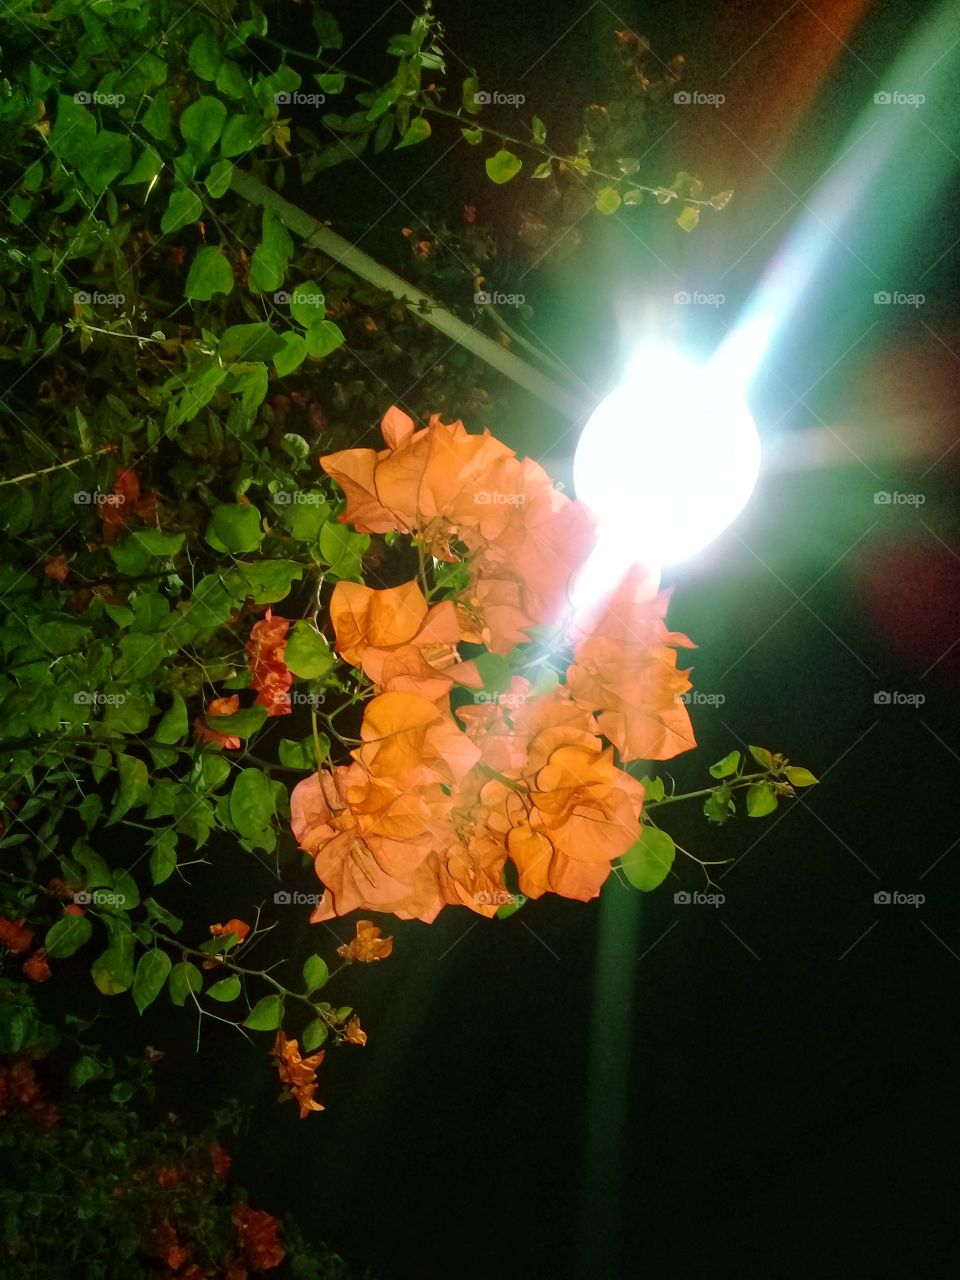 flower in the light